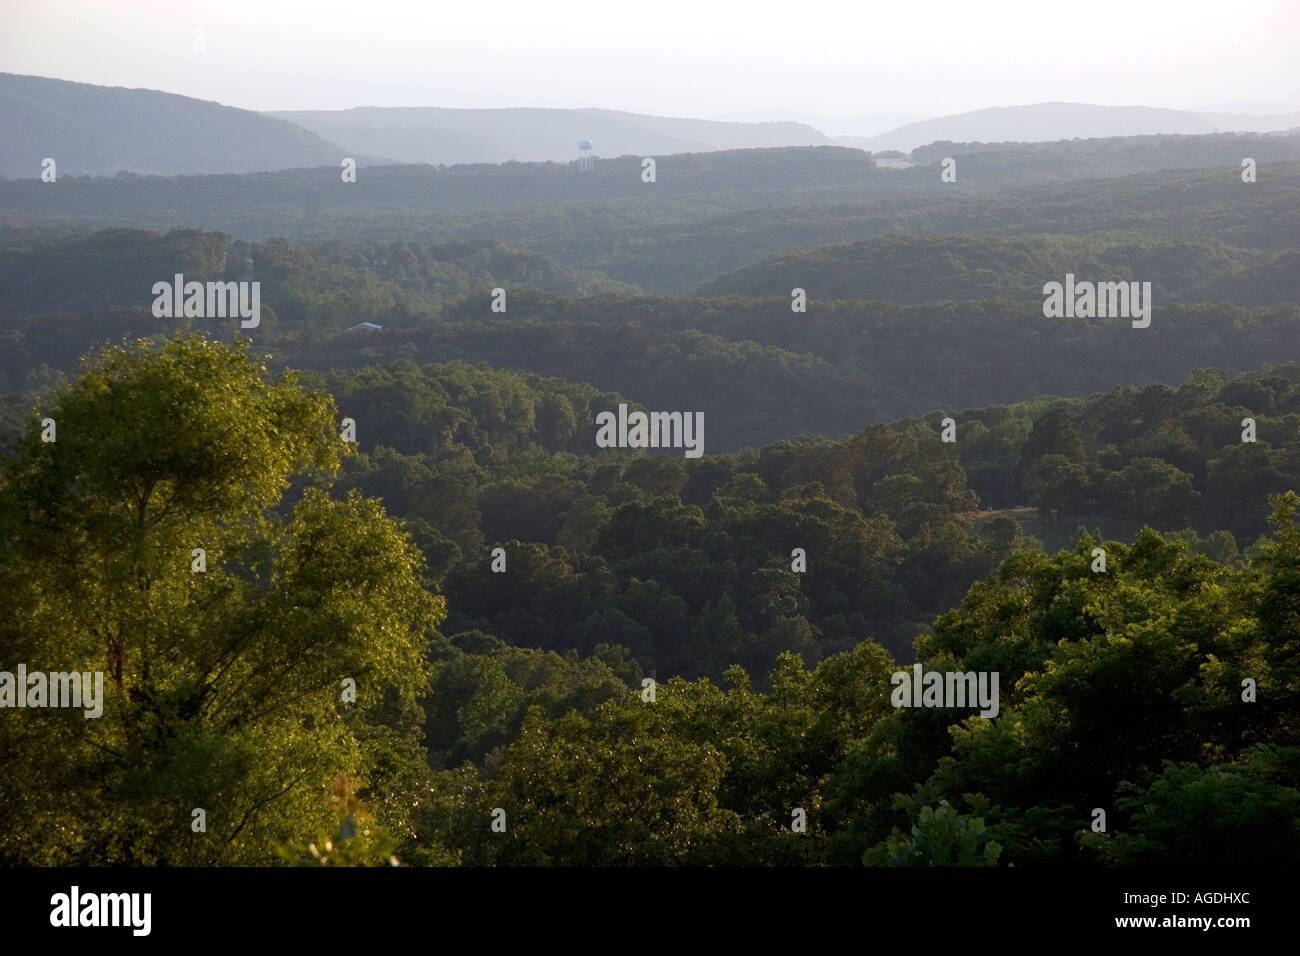 View of the Ozark Mountains near Mountain View, Arkansas Stock ...